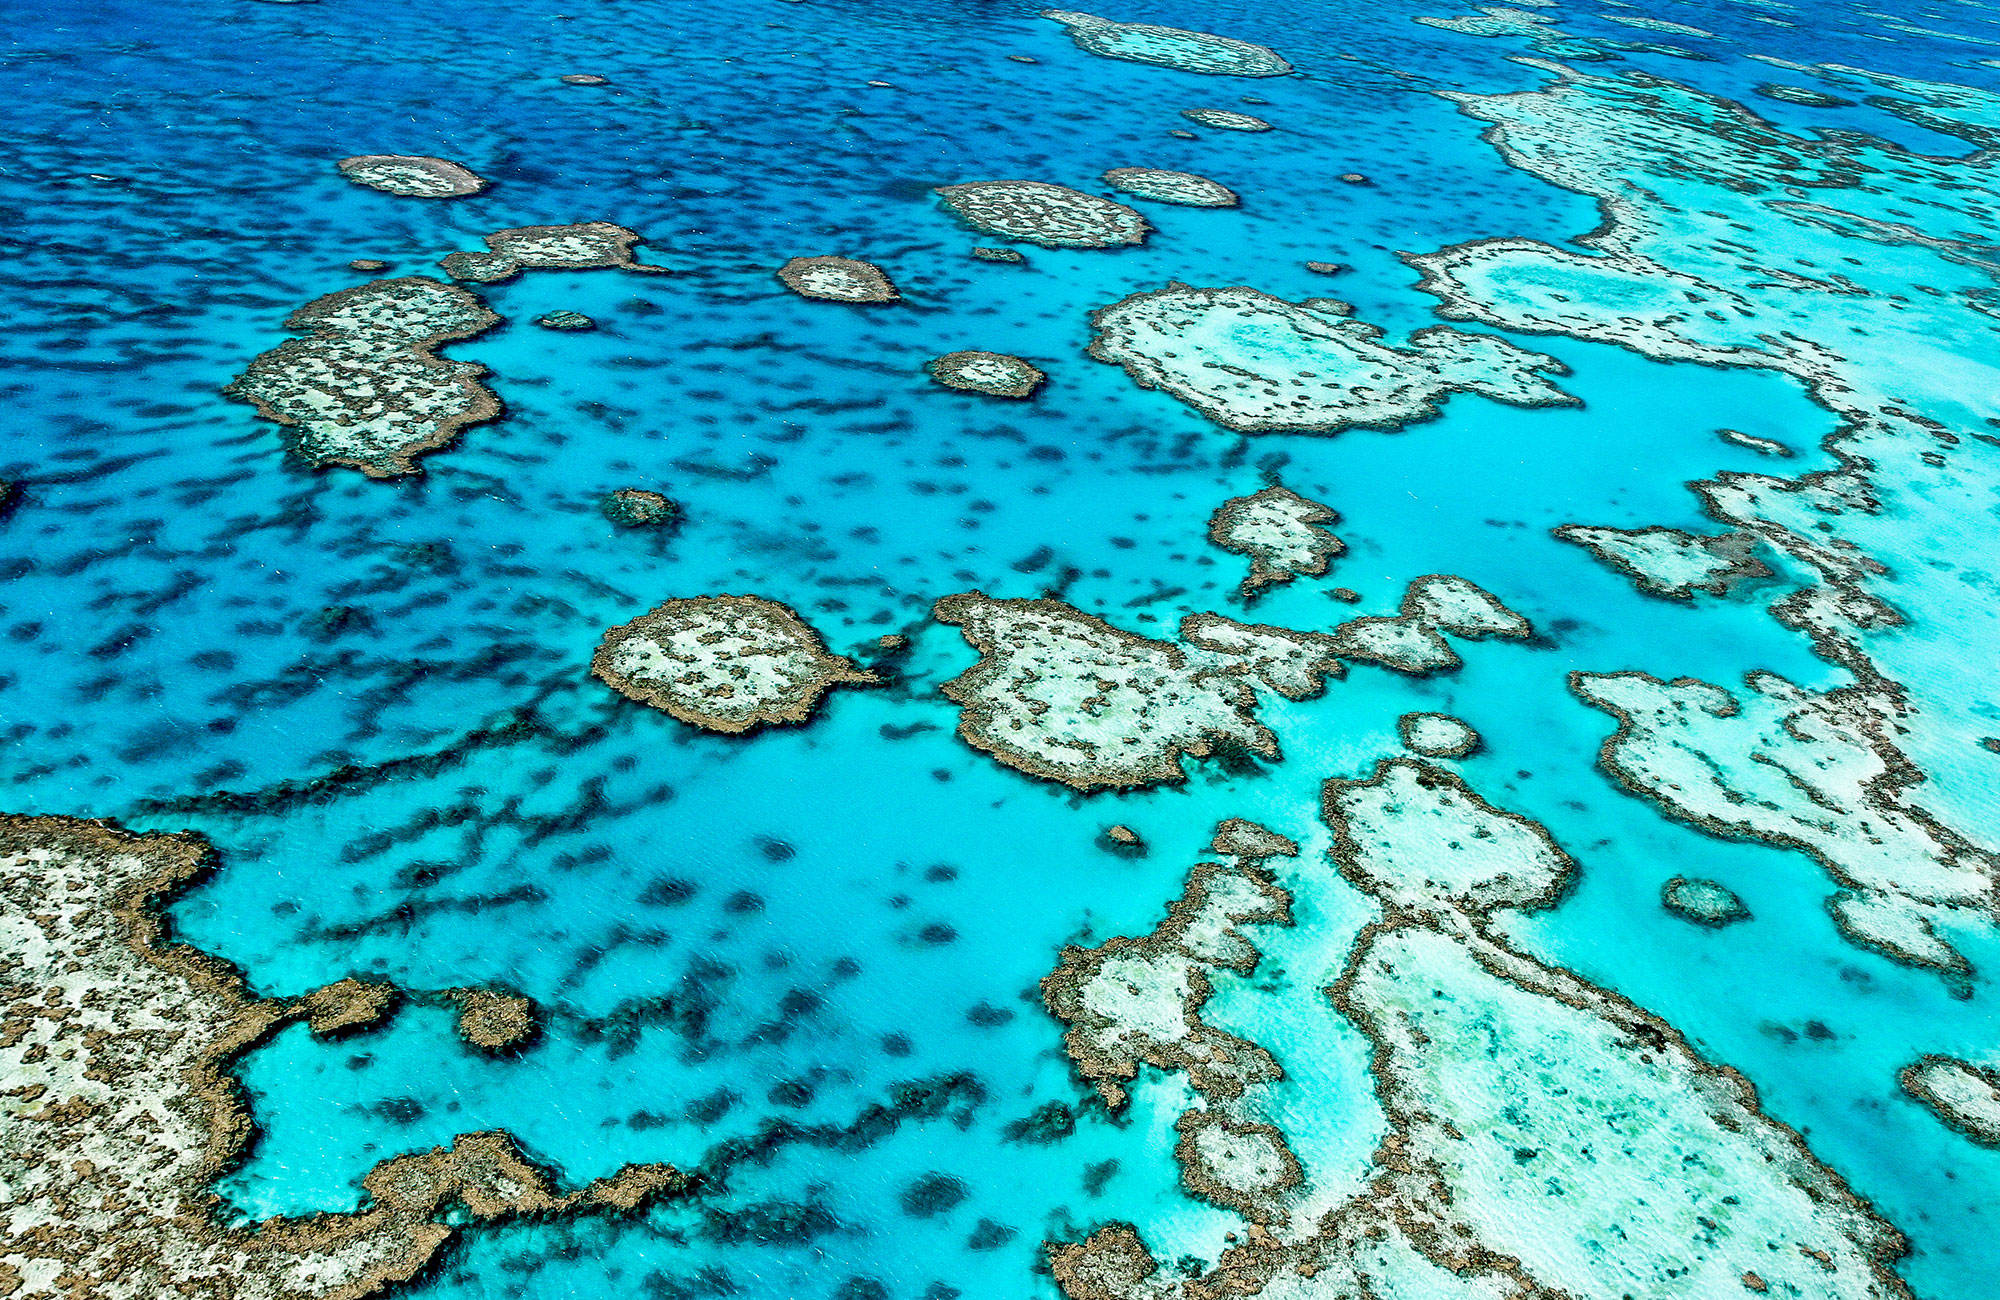 Du kan se vackra korallrev utanför Australien är du studerar där